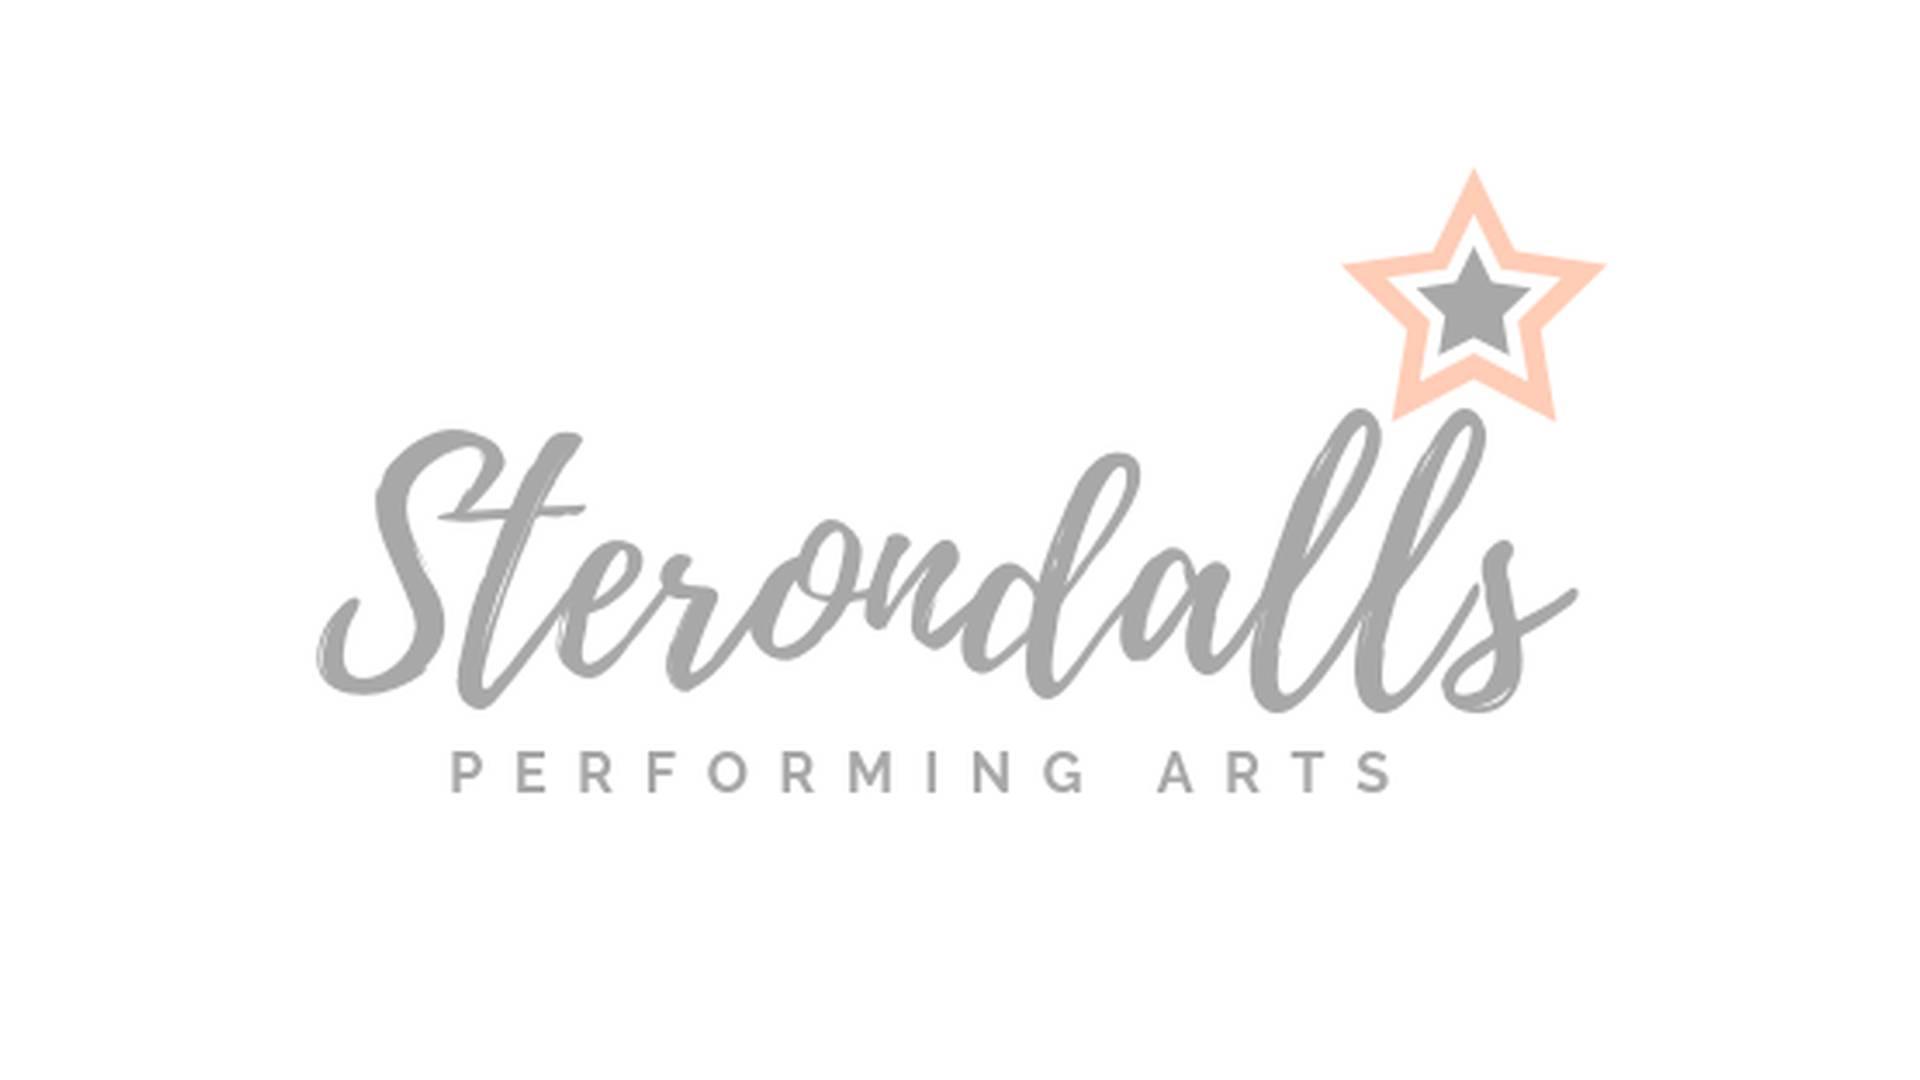 Sterondalls Performing Arts photo